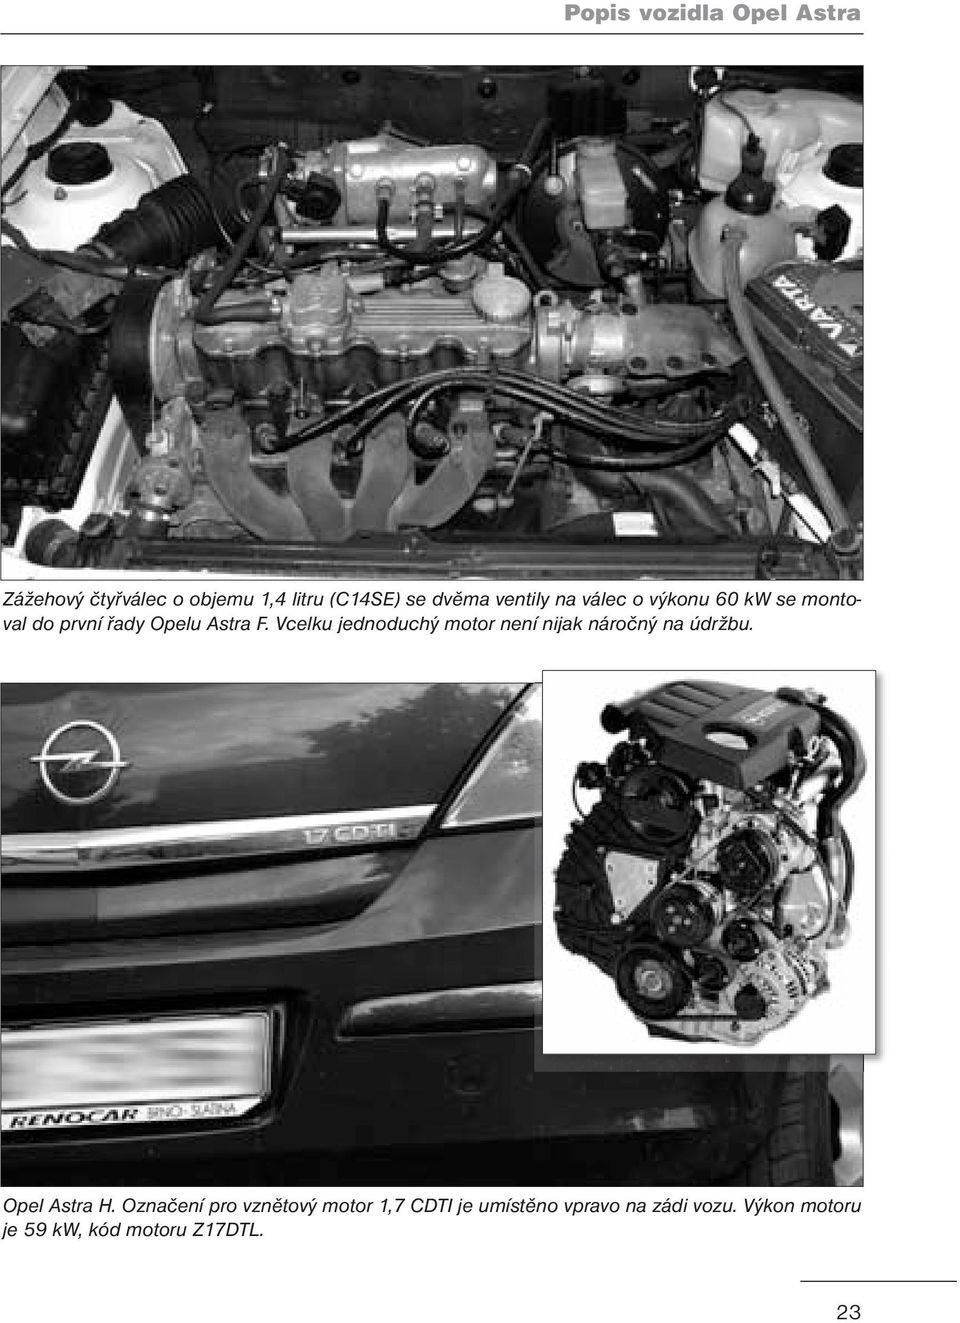 Vcelku jednoduchý motor není nijak náročný na údržbu. Opel Astra H.